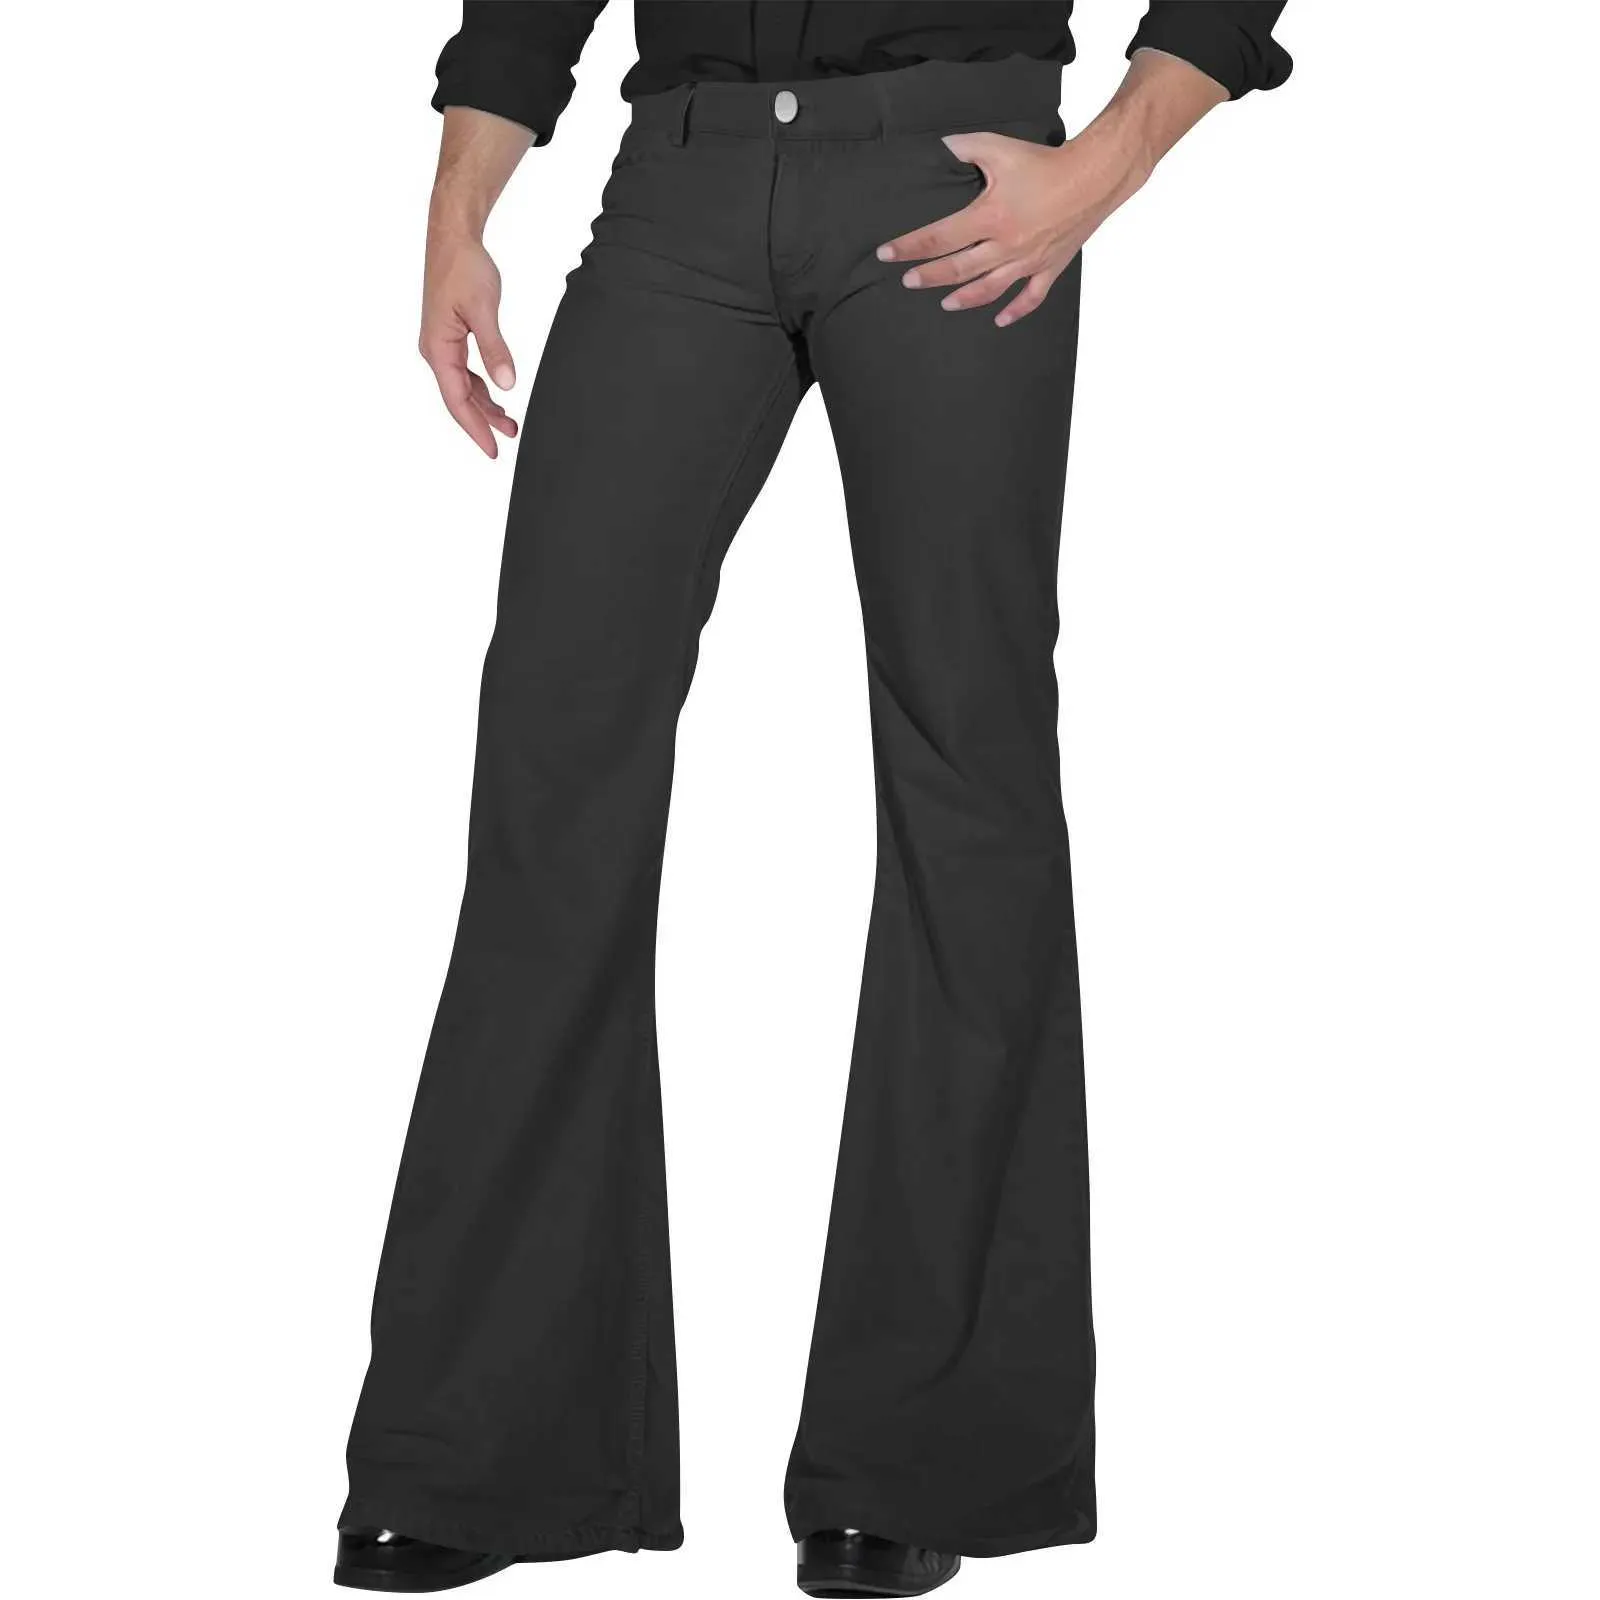 Pantalon masculin pour hommes vintage disco flash pantalon lâche pantalon vintage élastique adapté au confort élastique